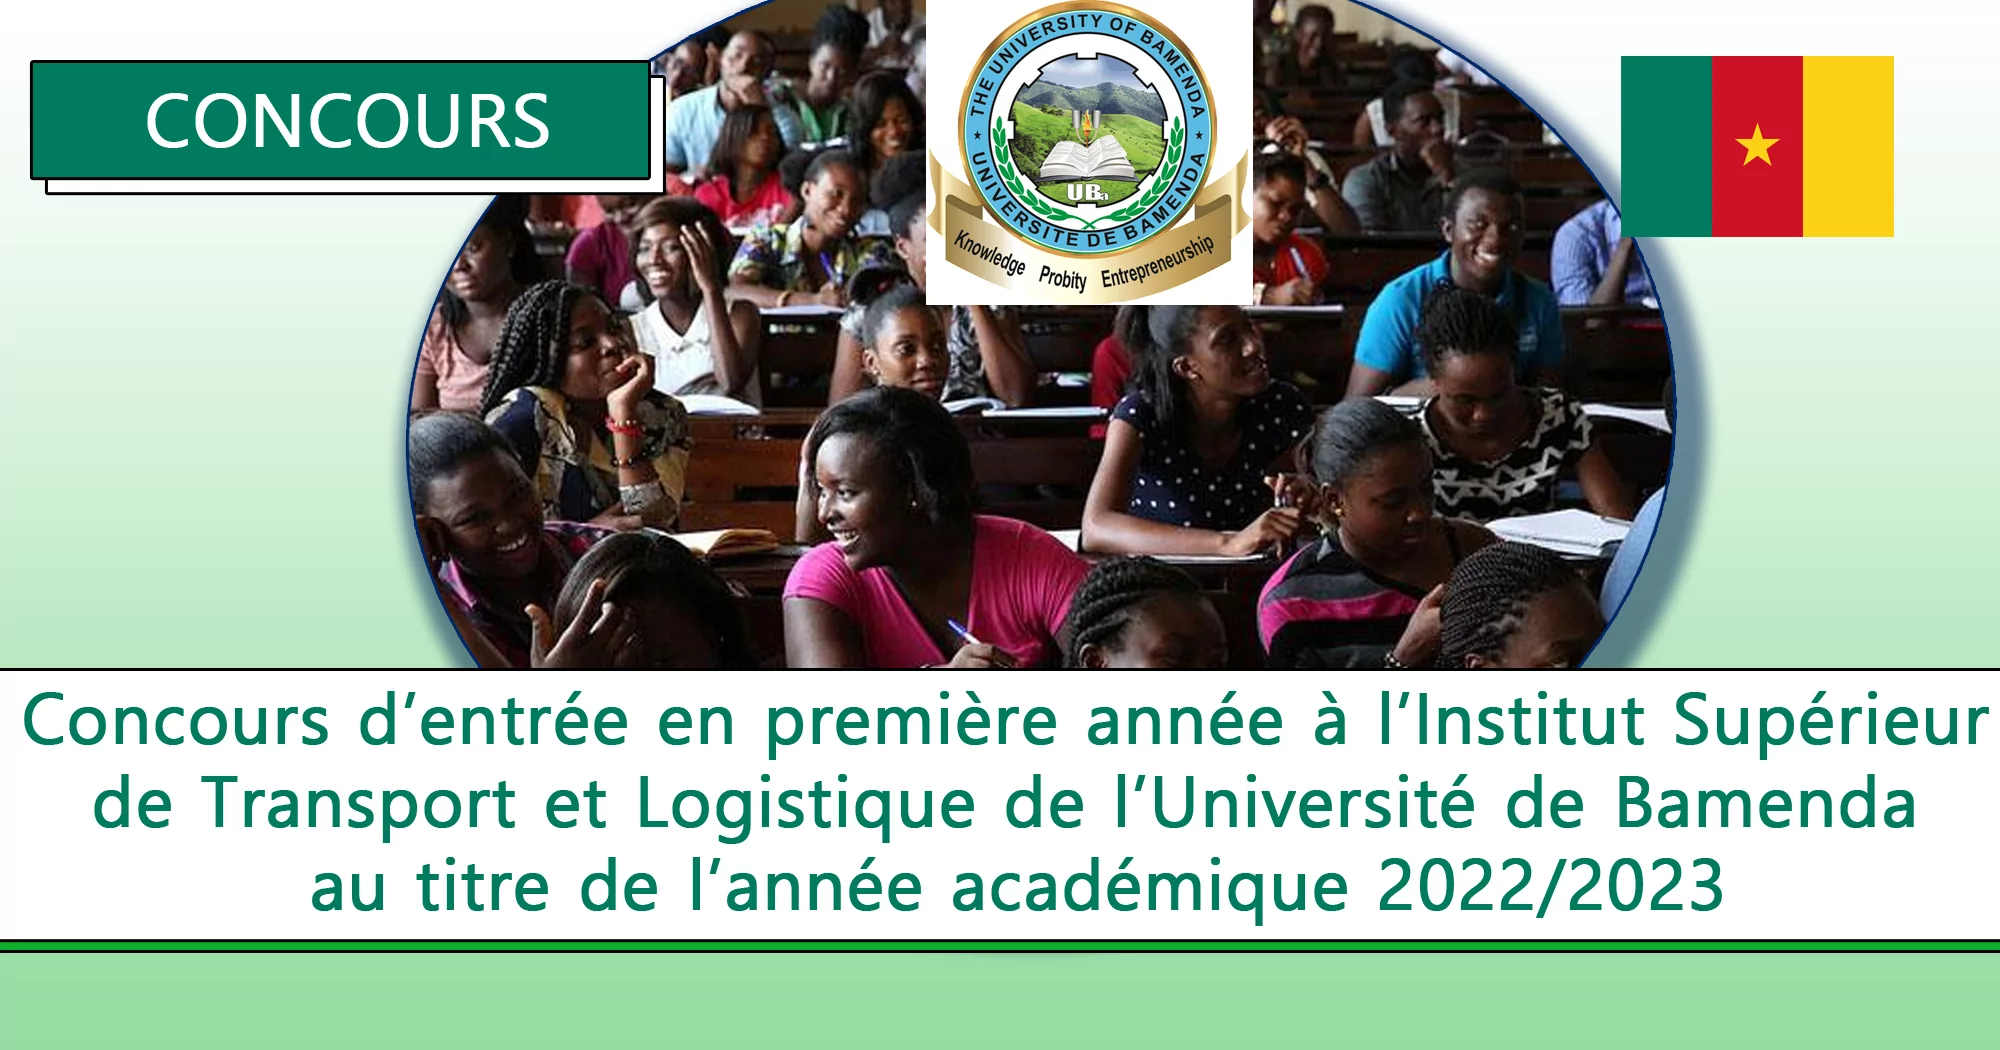 Concours d’entrée en première année à l’Institut Supérieur de Transport et Logistique de l’Université de Bamenda au titre de l’année académique 2022/2023